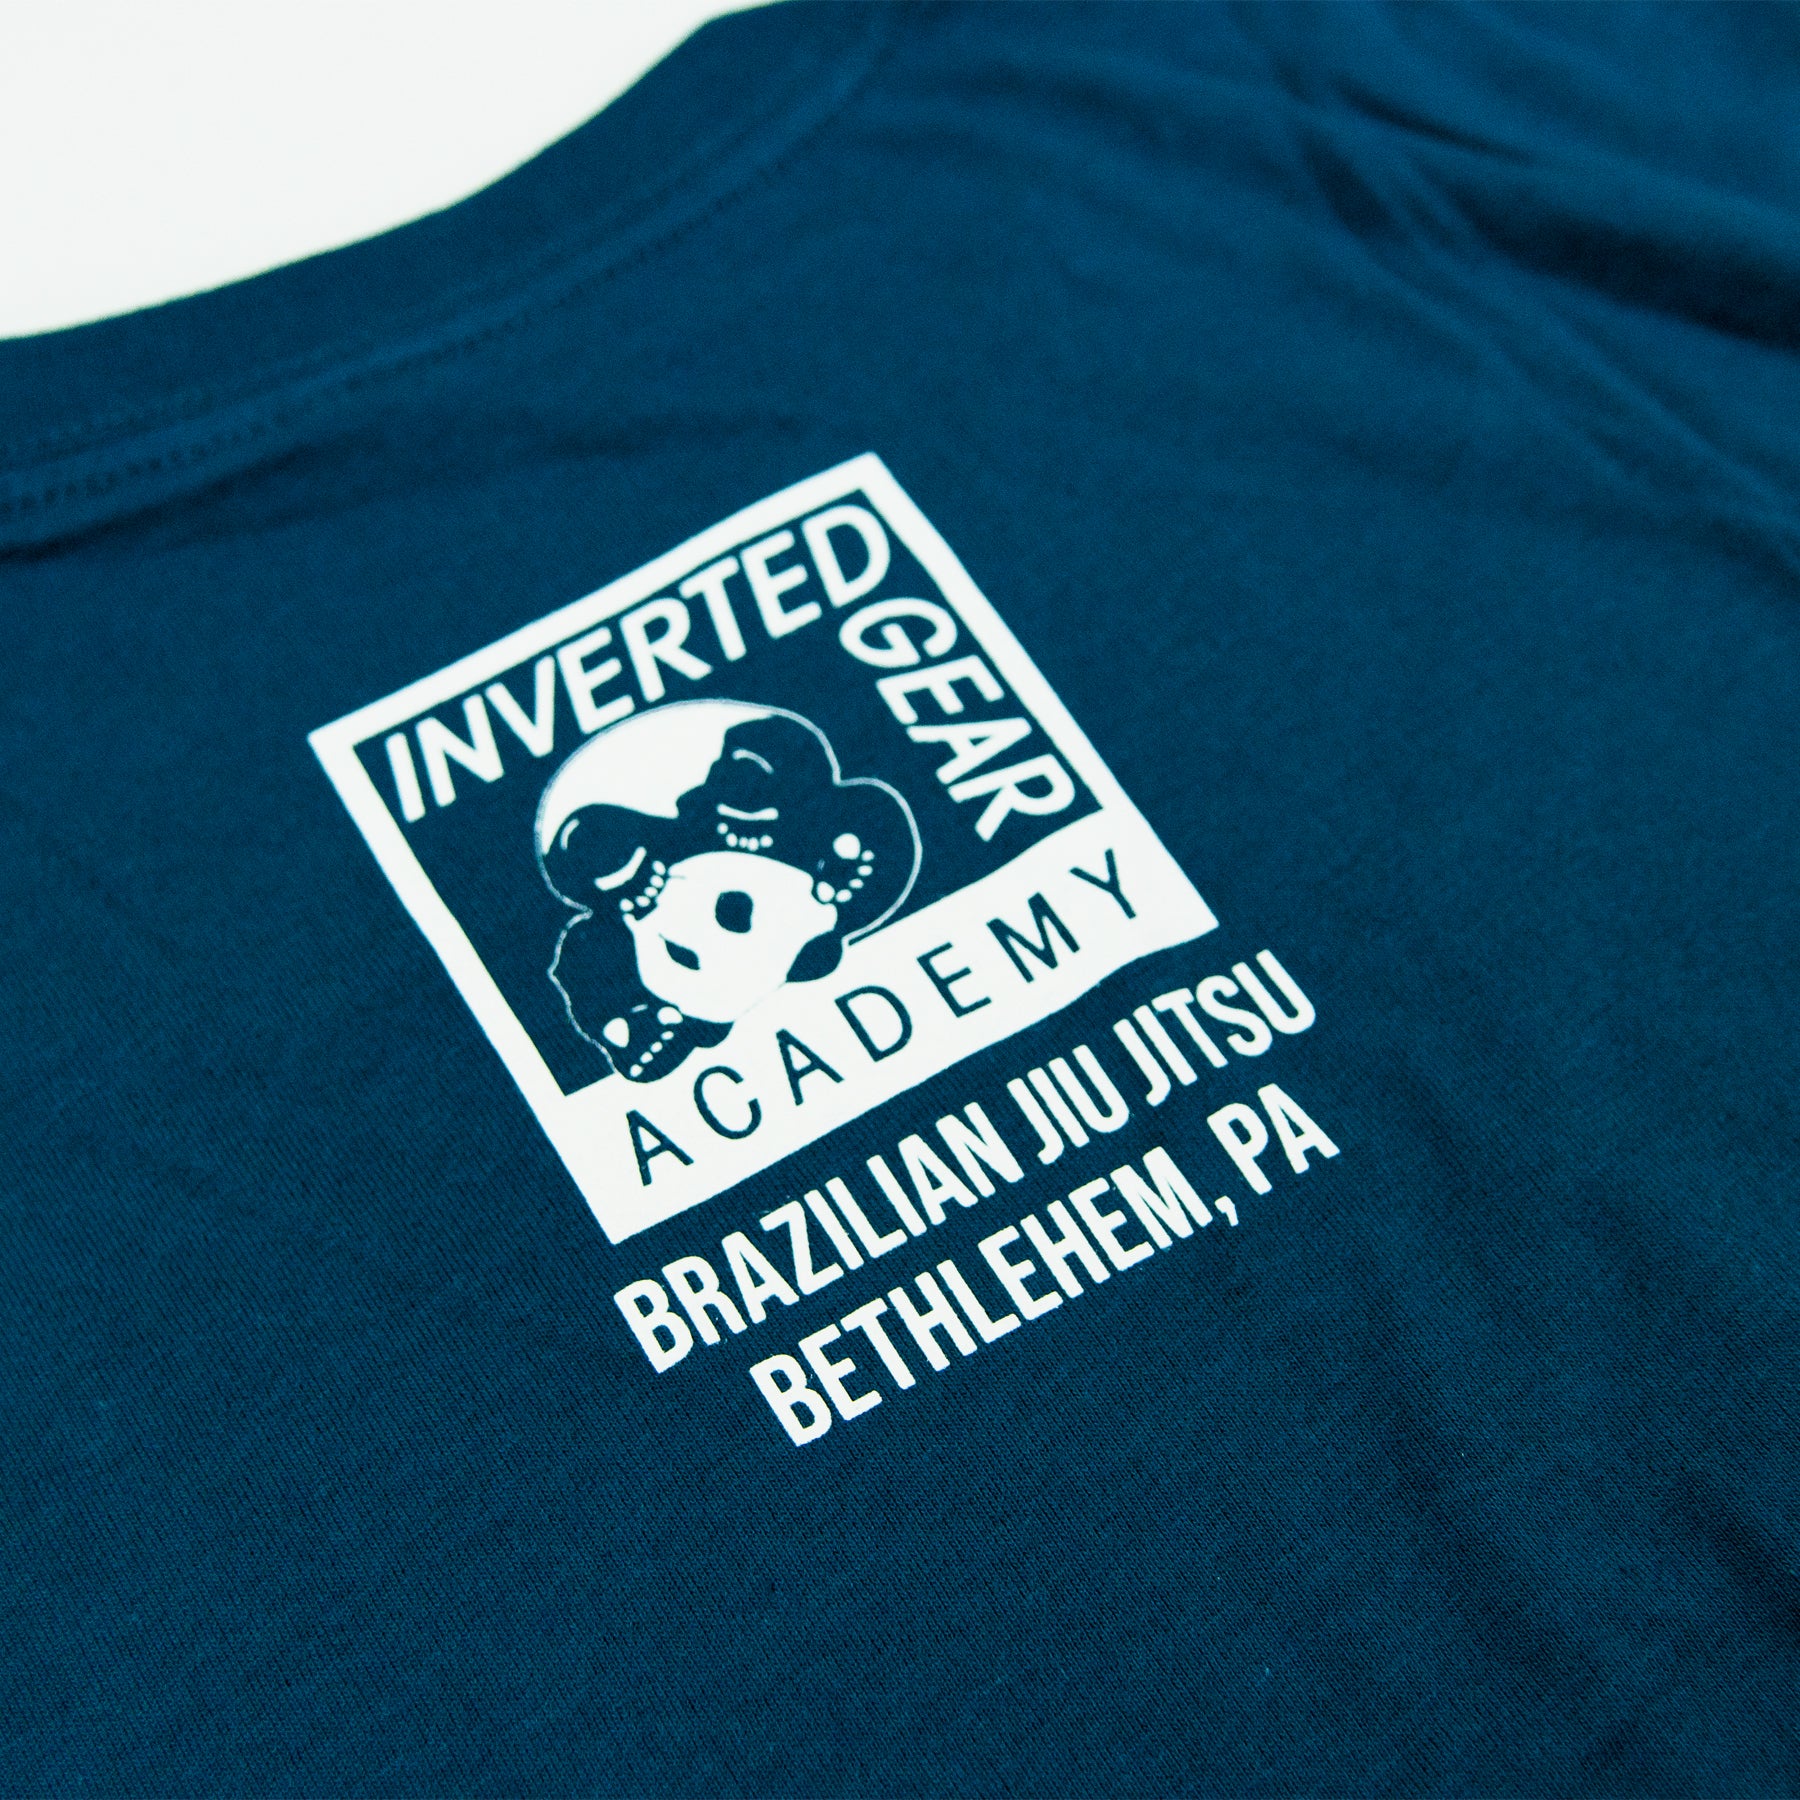 Academy Blue Logo T-shirt